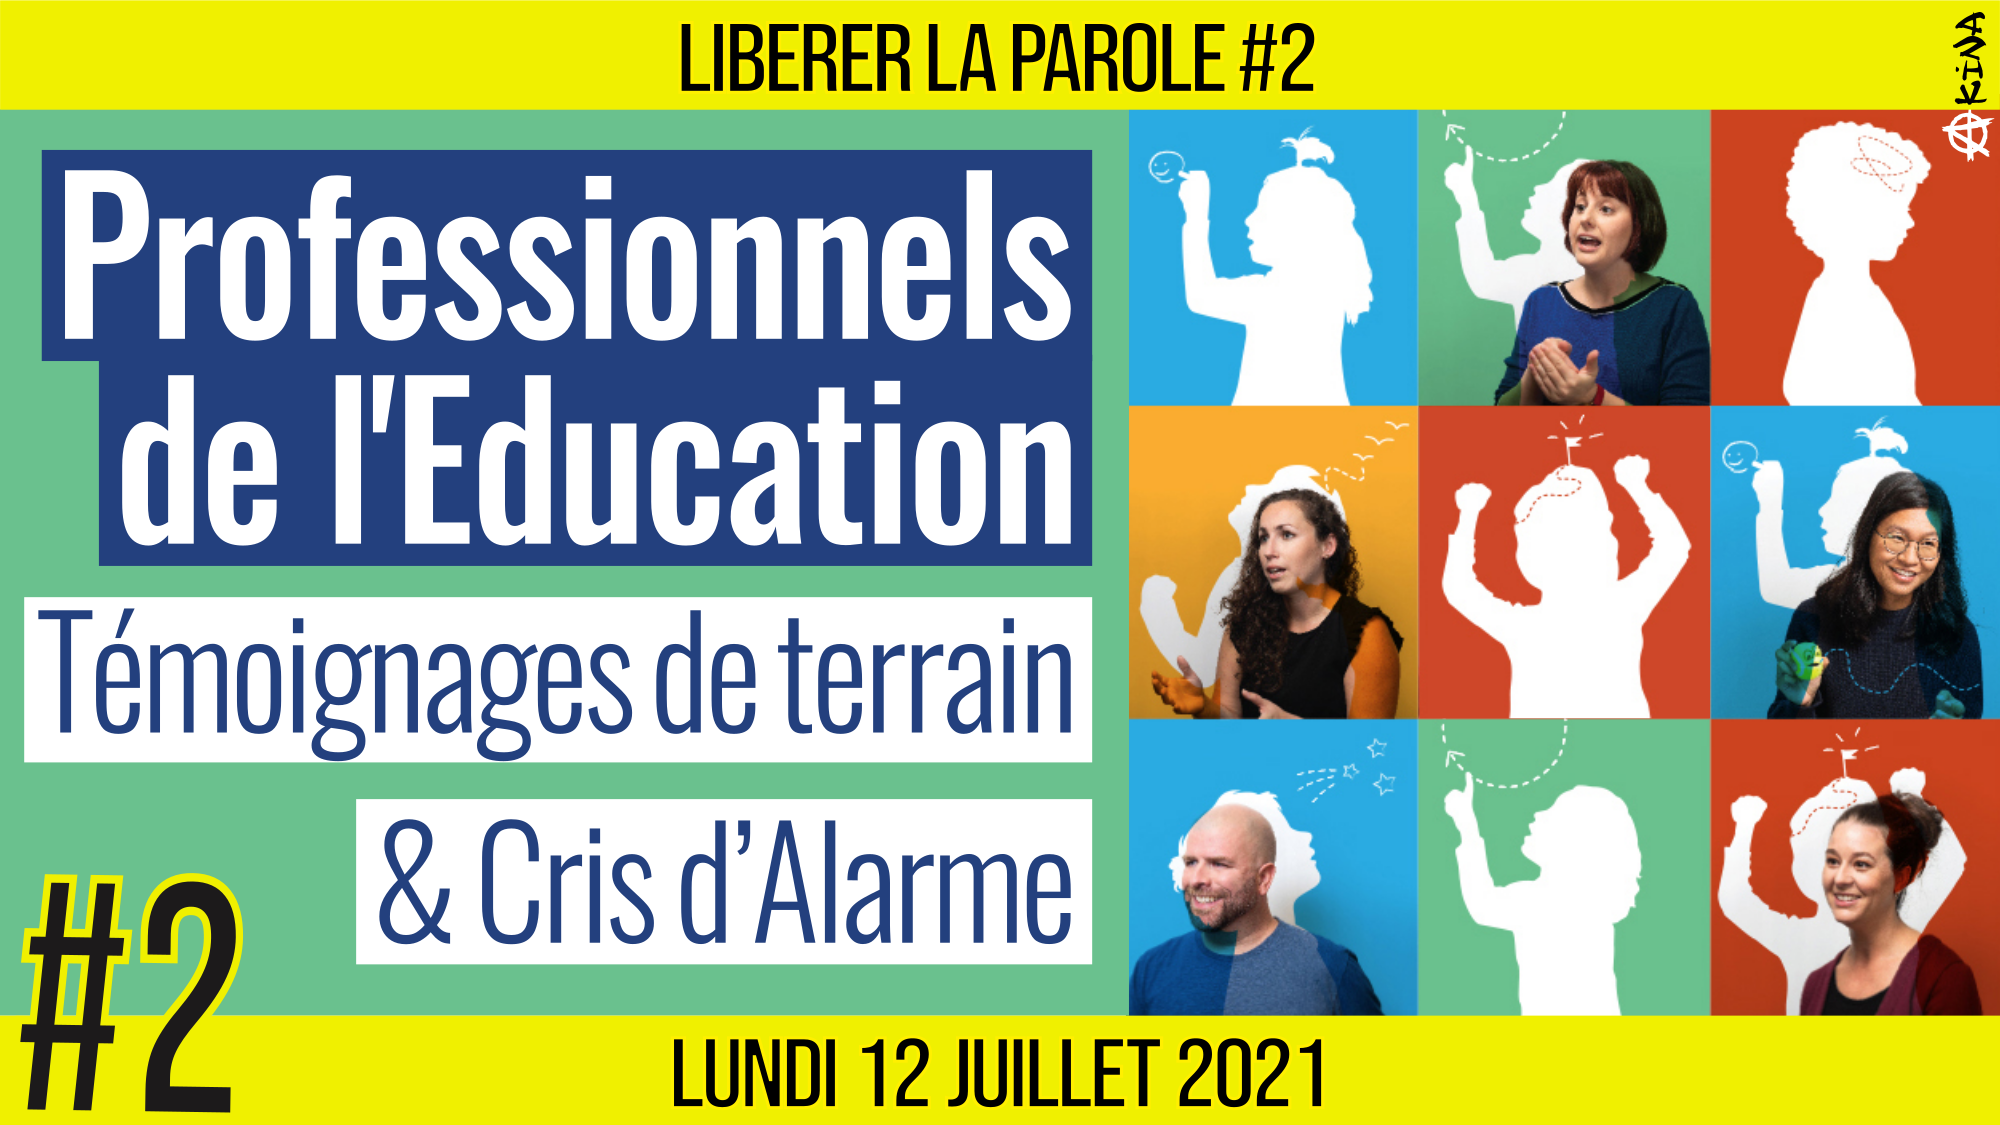 👄 LIBÉRER LA PAROLE #2 🗣 Professionnels de l’Éducation 🎯 Témoignages & Cris d’Alarme 📆 12-07-2021